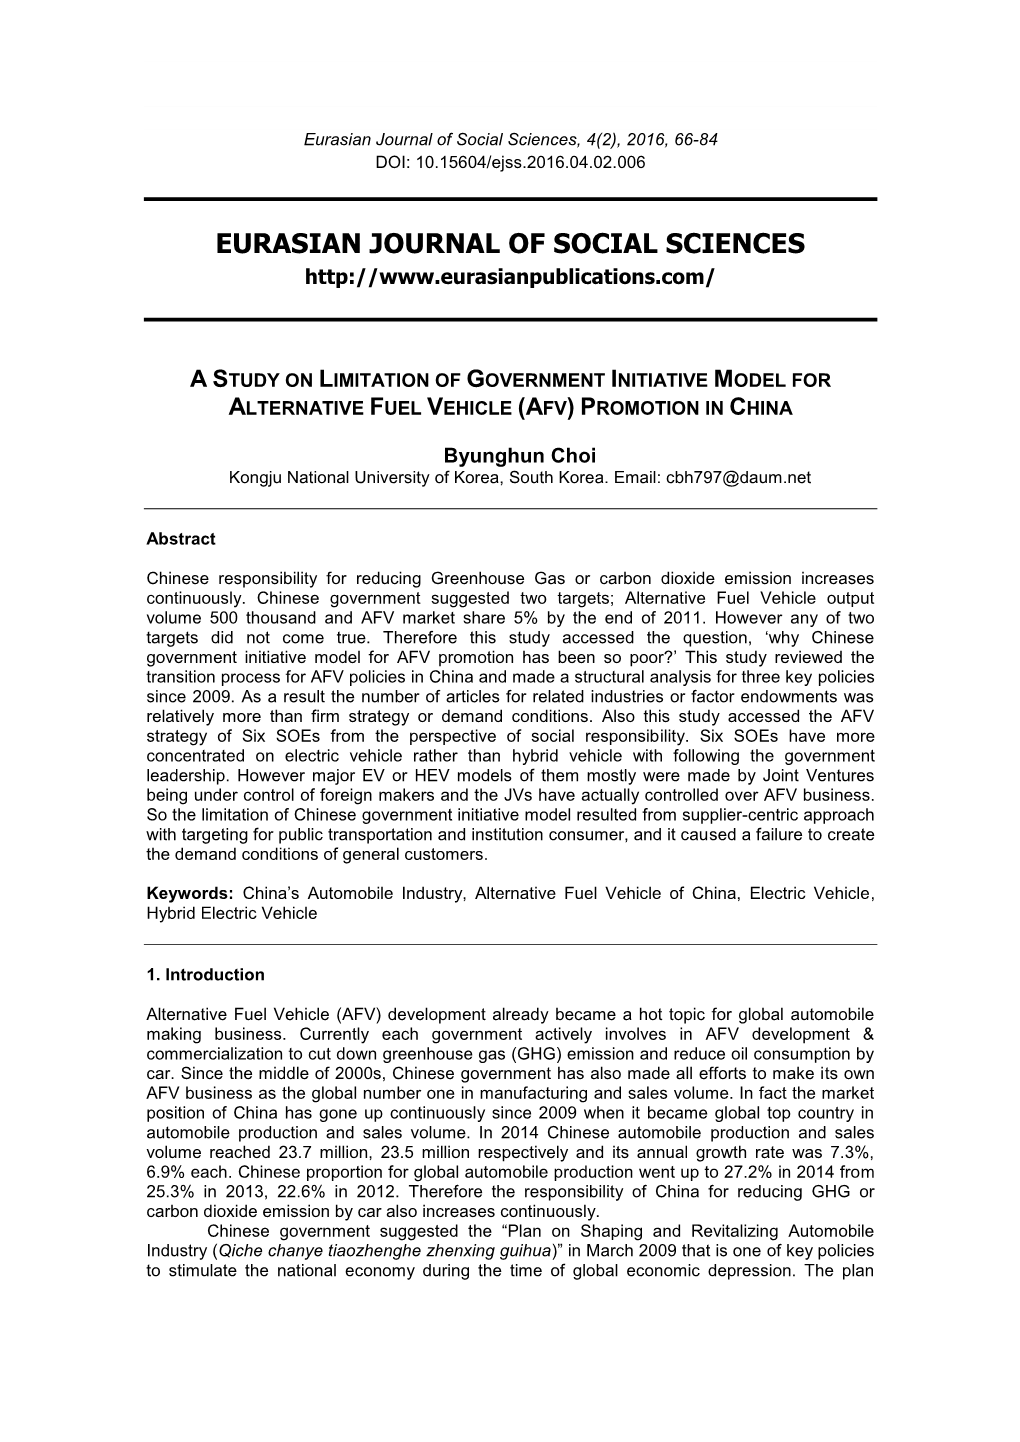 Eurasian Journal of Social Sciences, 4(2), 2016, 66-84 DOI: 10.15604/Ejss.2016.04.02.006